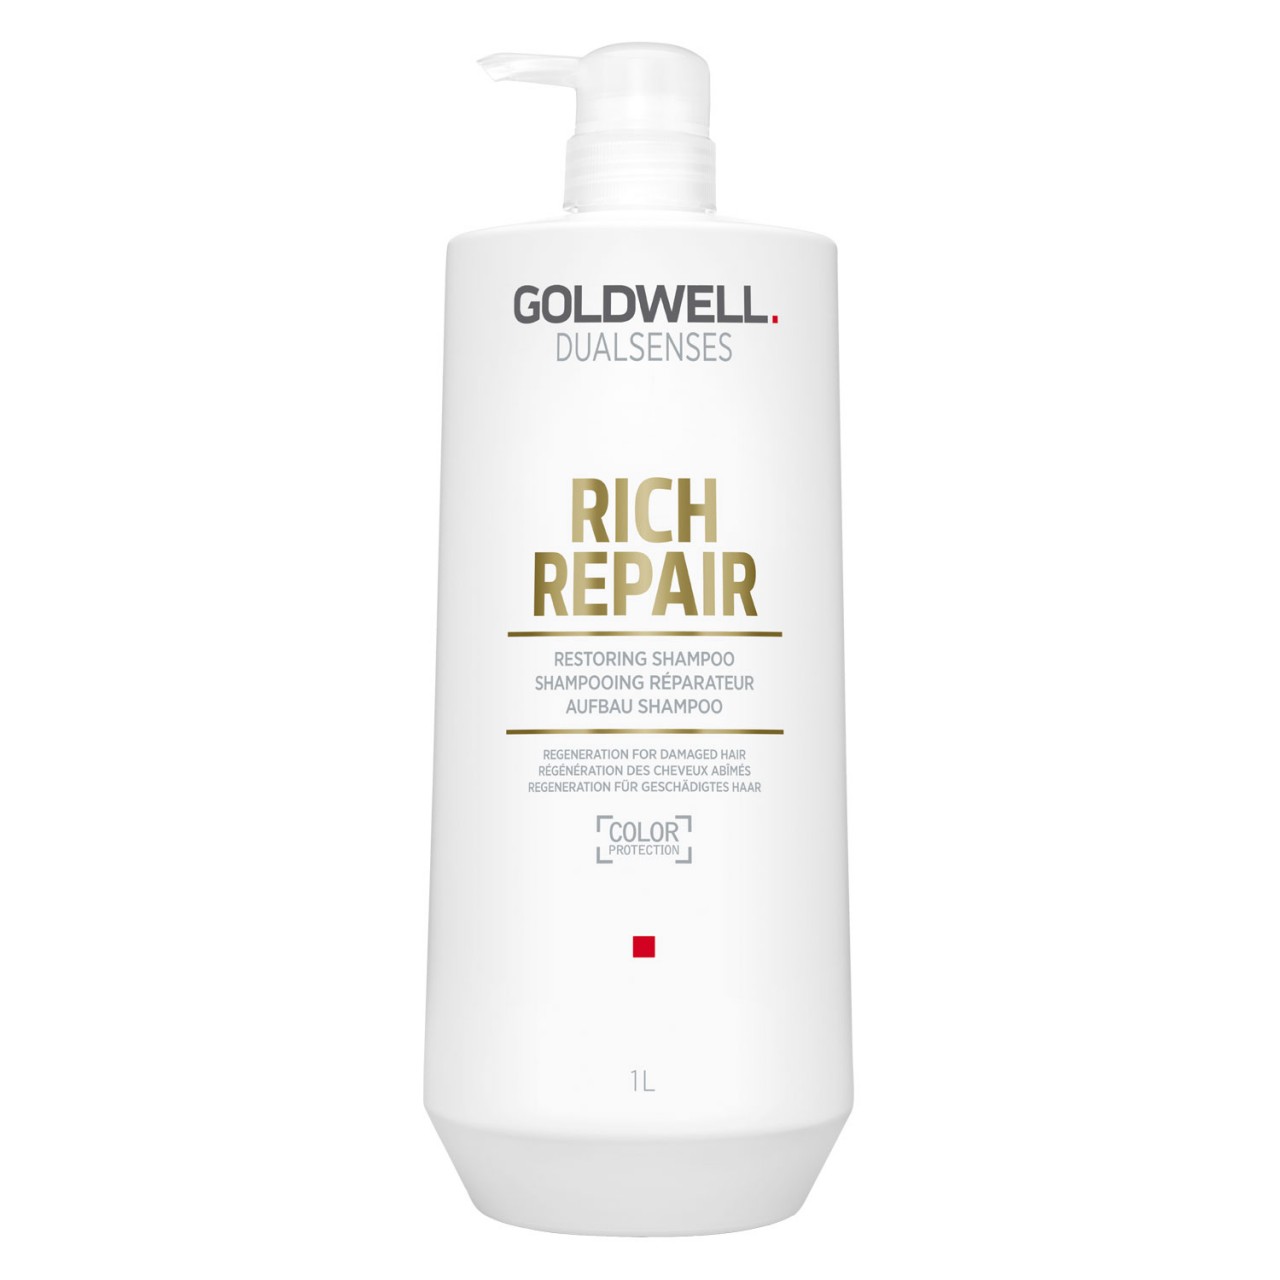 Dualsenses Rich Repair - Restore Shampoo von Goldwell